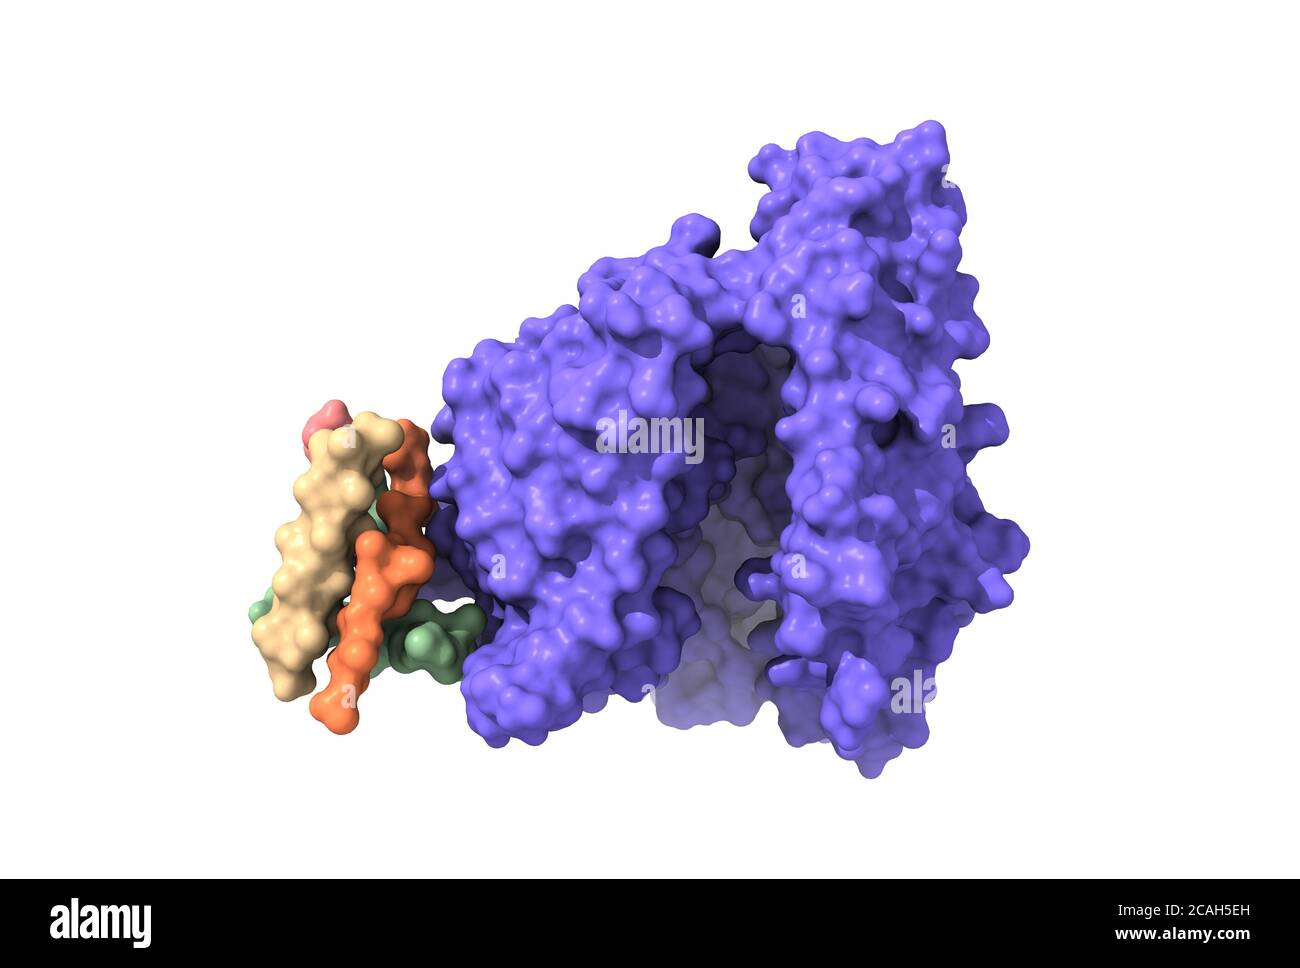 Struktur der humanen Angiotensin-Converting Enzyme-Related Carboxypeptidase (ACE2), ein Rezeptor von SARS-CoV-2 Spike Glykoprotein, 3D-Oberflächenmodell Stockfoto